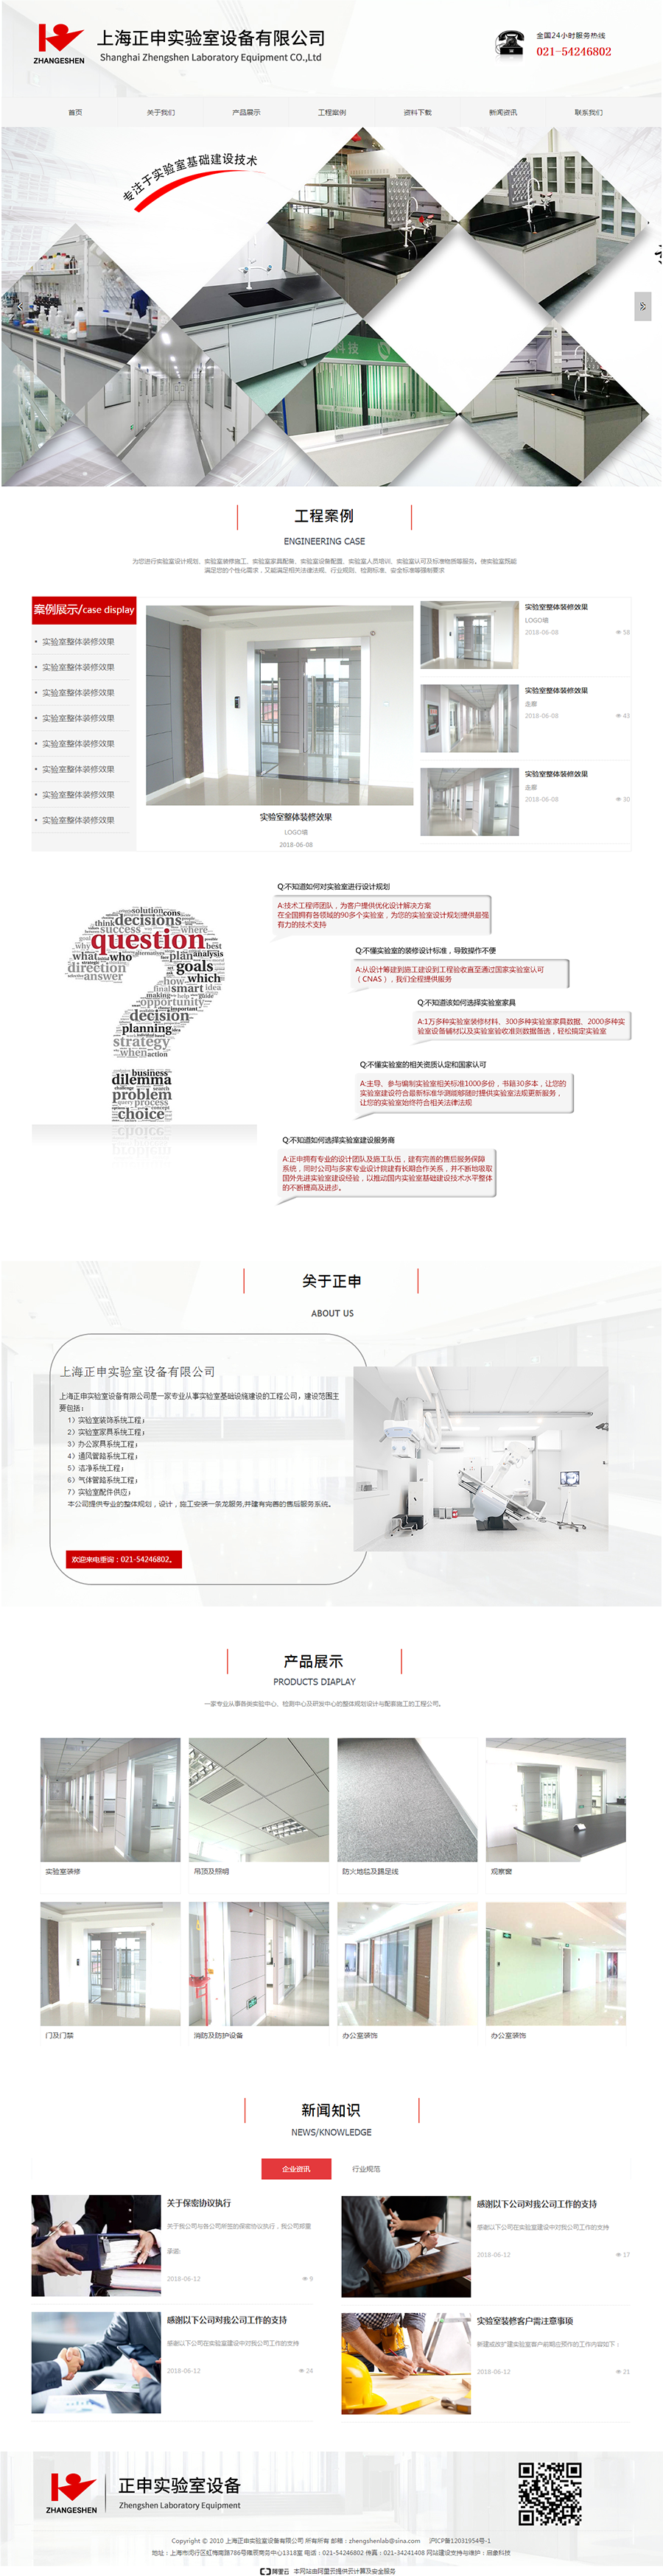 上海正申实验室装饰设计家具系统工程办公家具系统通风管路洁净系统气体管路实验室配件